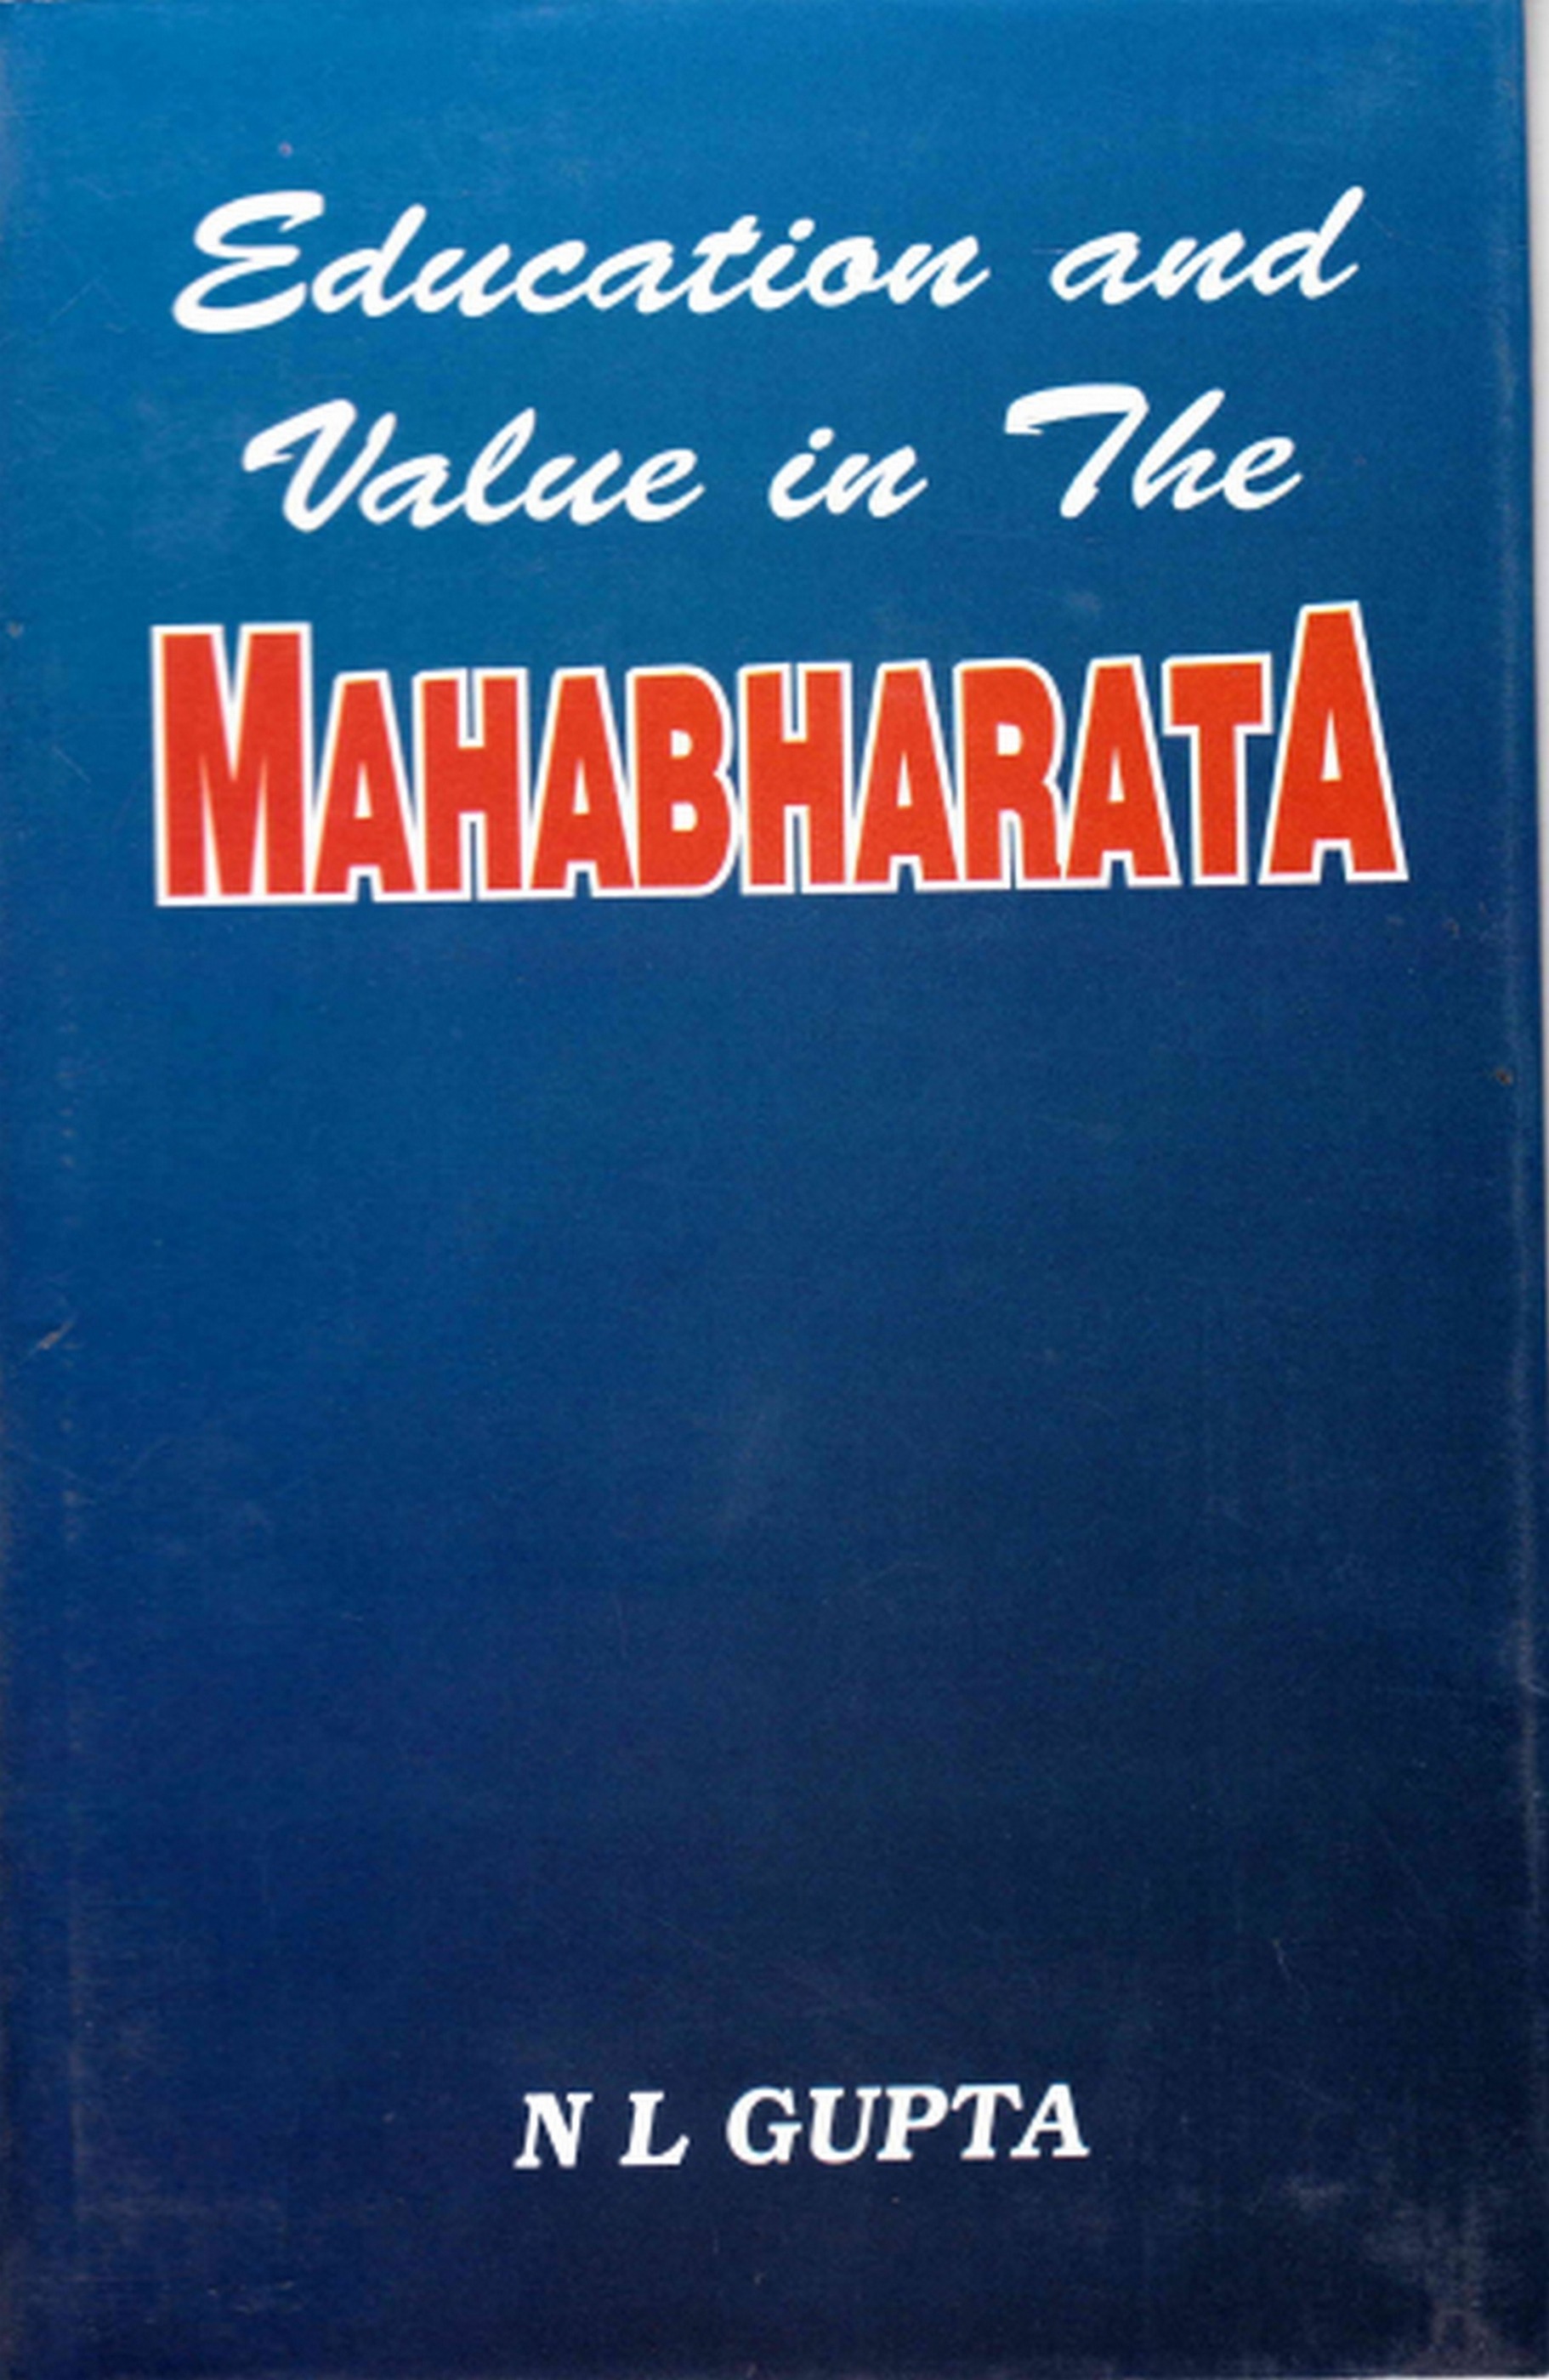 Education and Values in the Mahabharata